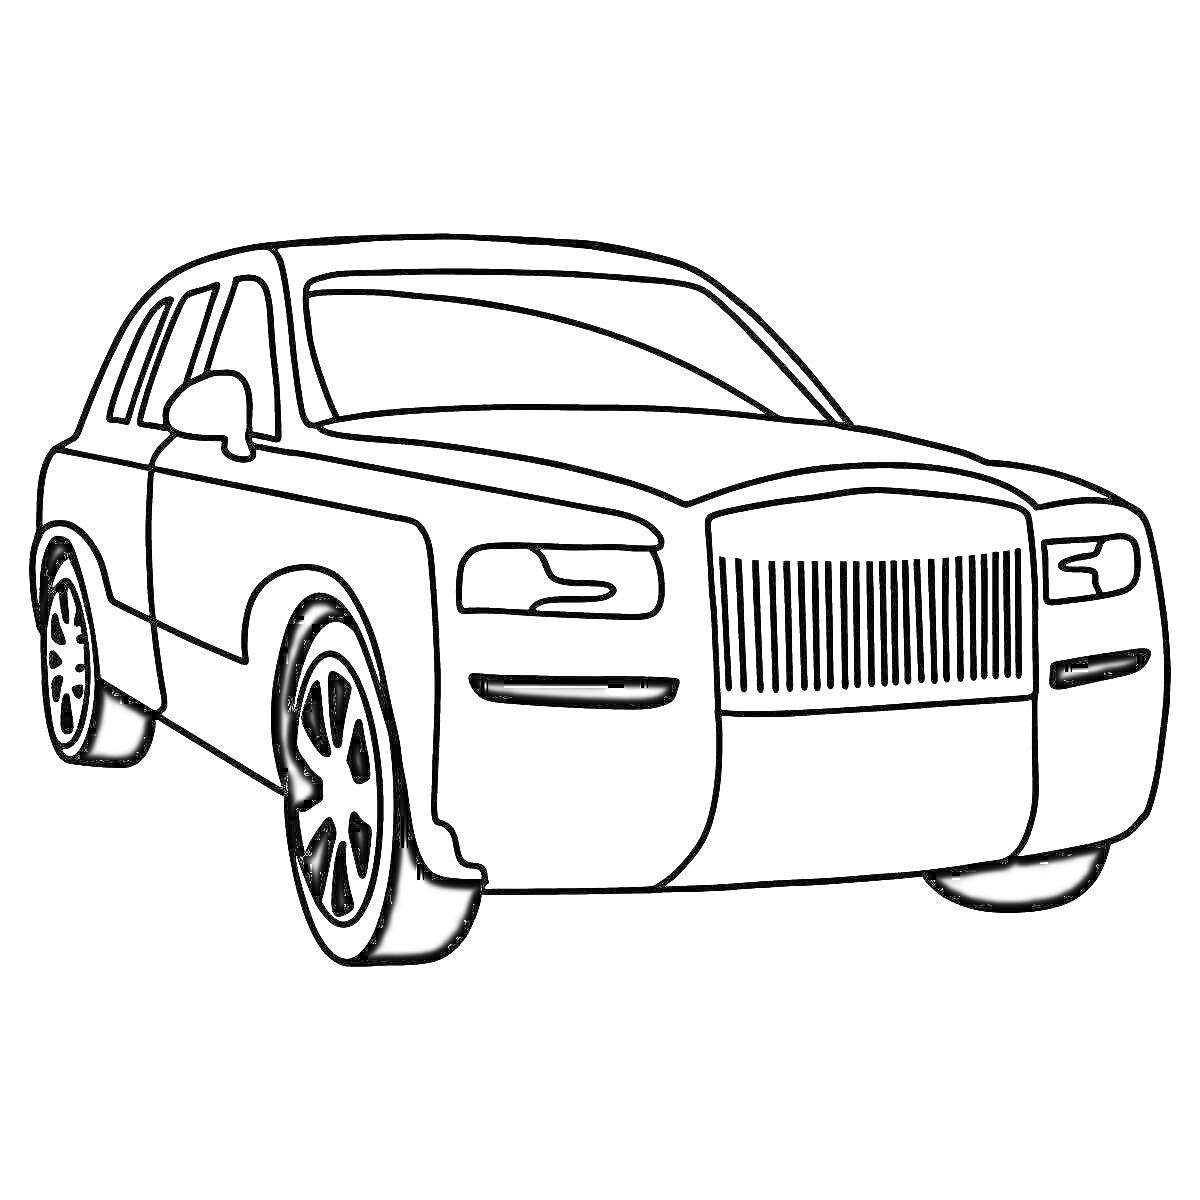 Раскраска Раскраска автомобиля Роллс Ройс Фантом с большими колесами и детализированной решеткой радиатора